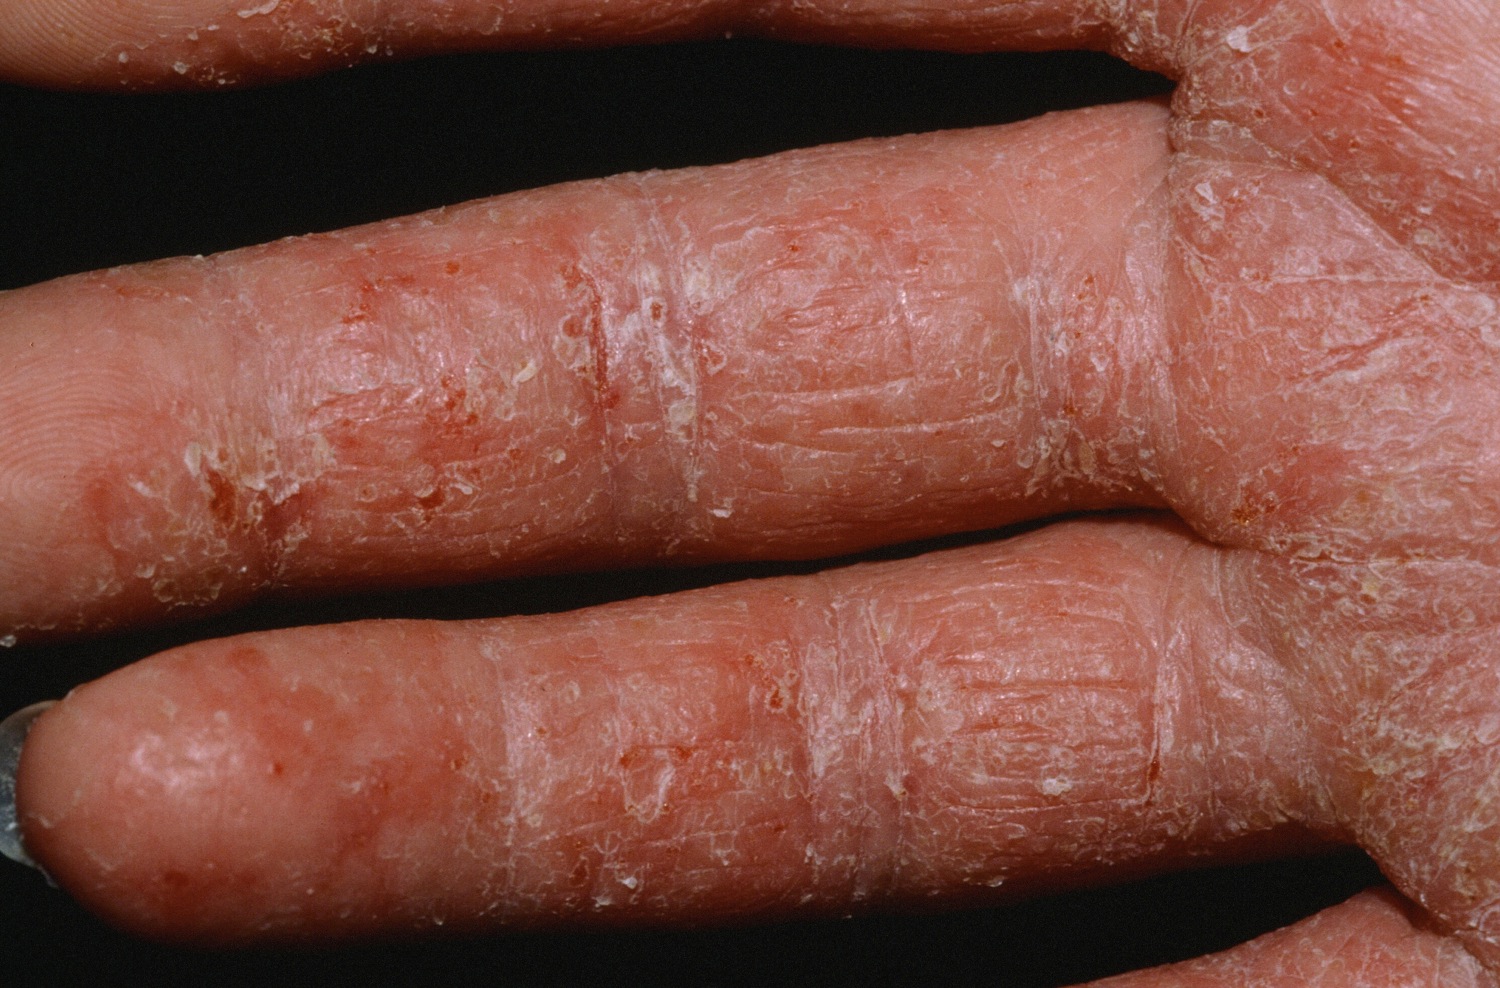 mild dermatitis herpetiformis on hands